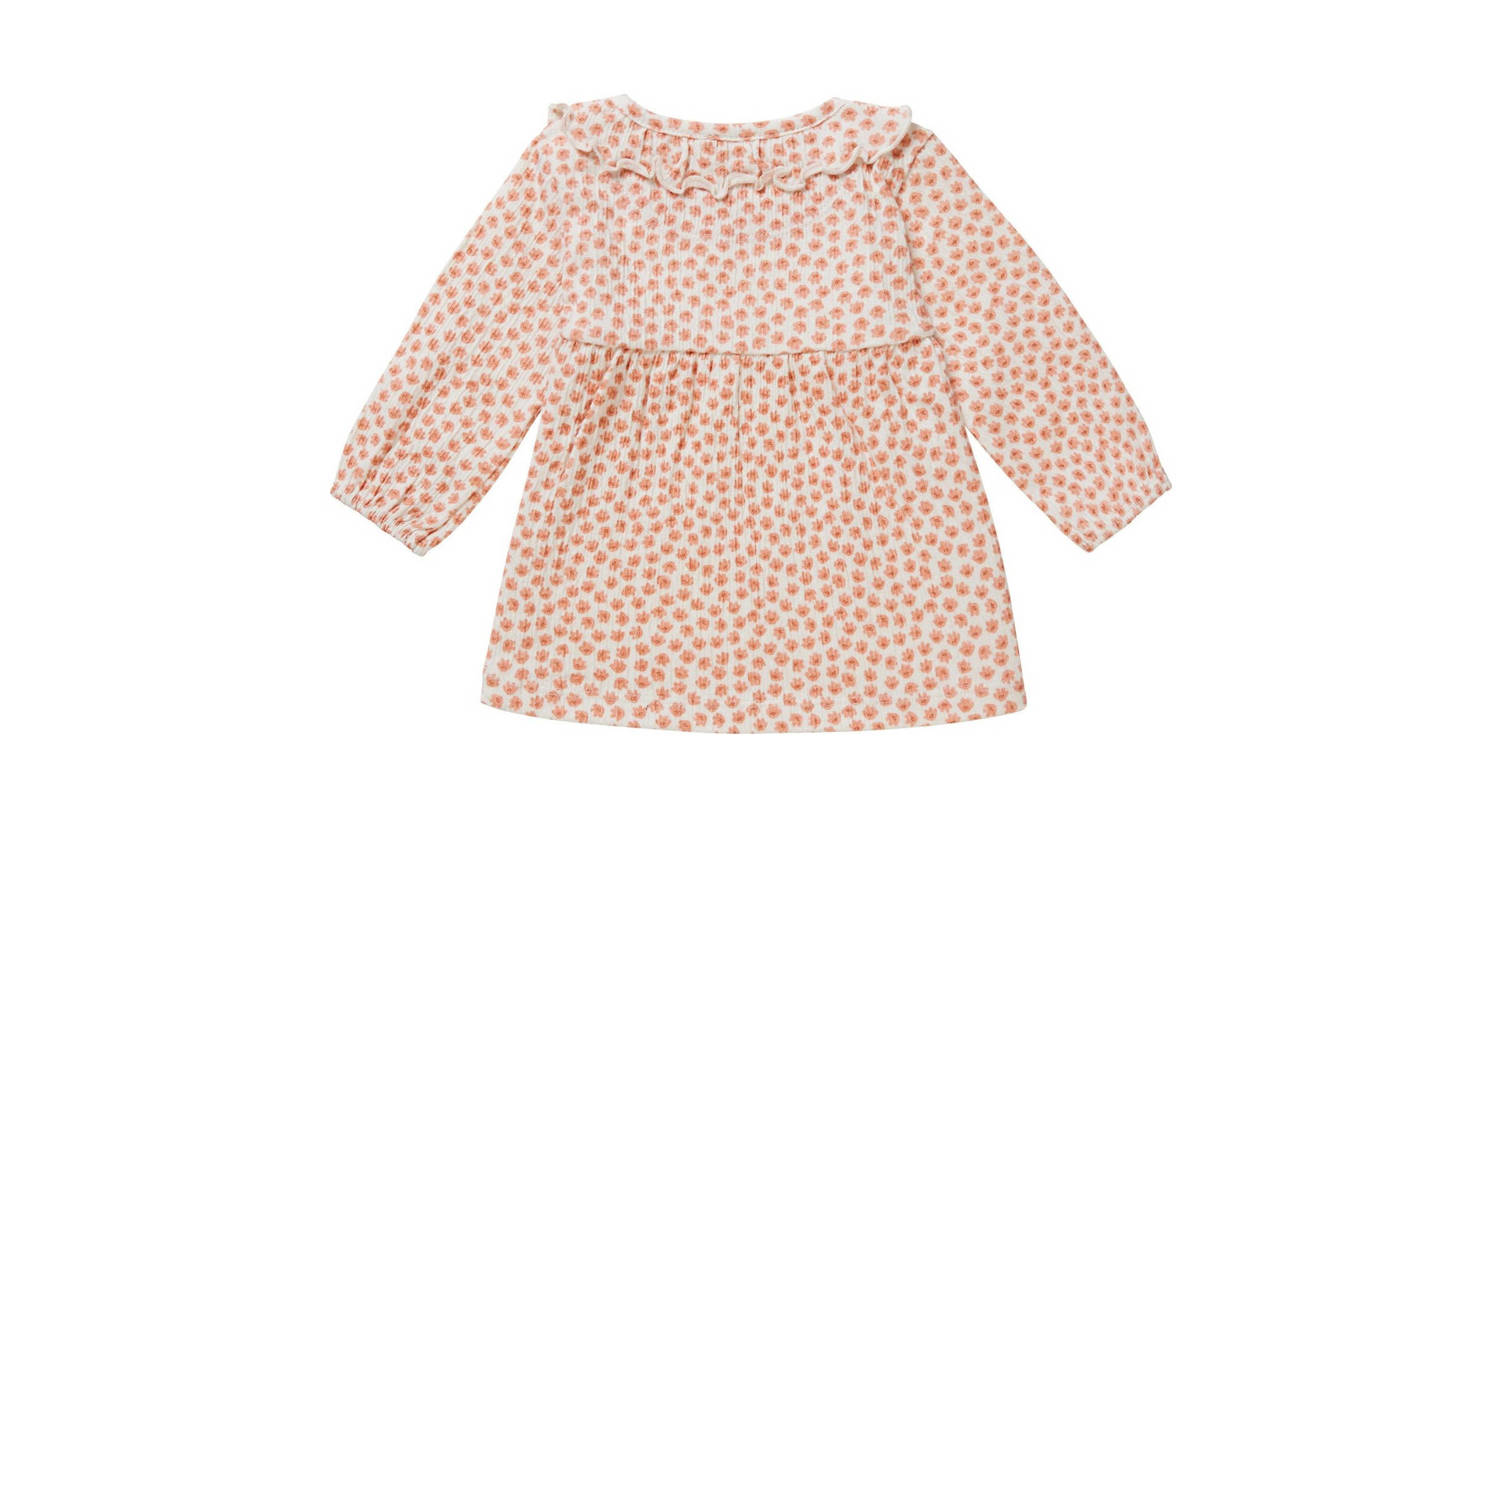 Noppies baby jurk met all over print en ruches roze wit